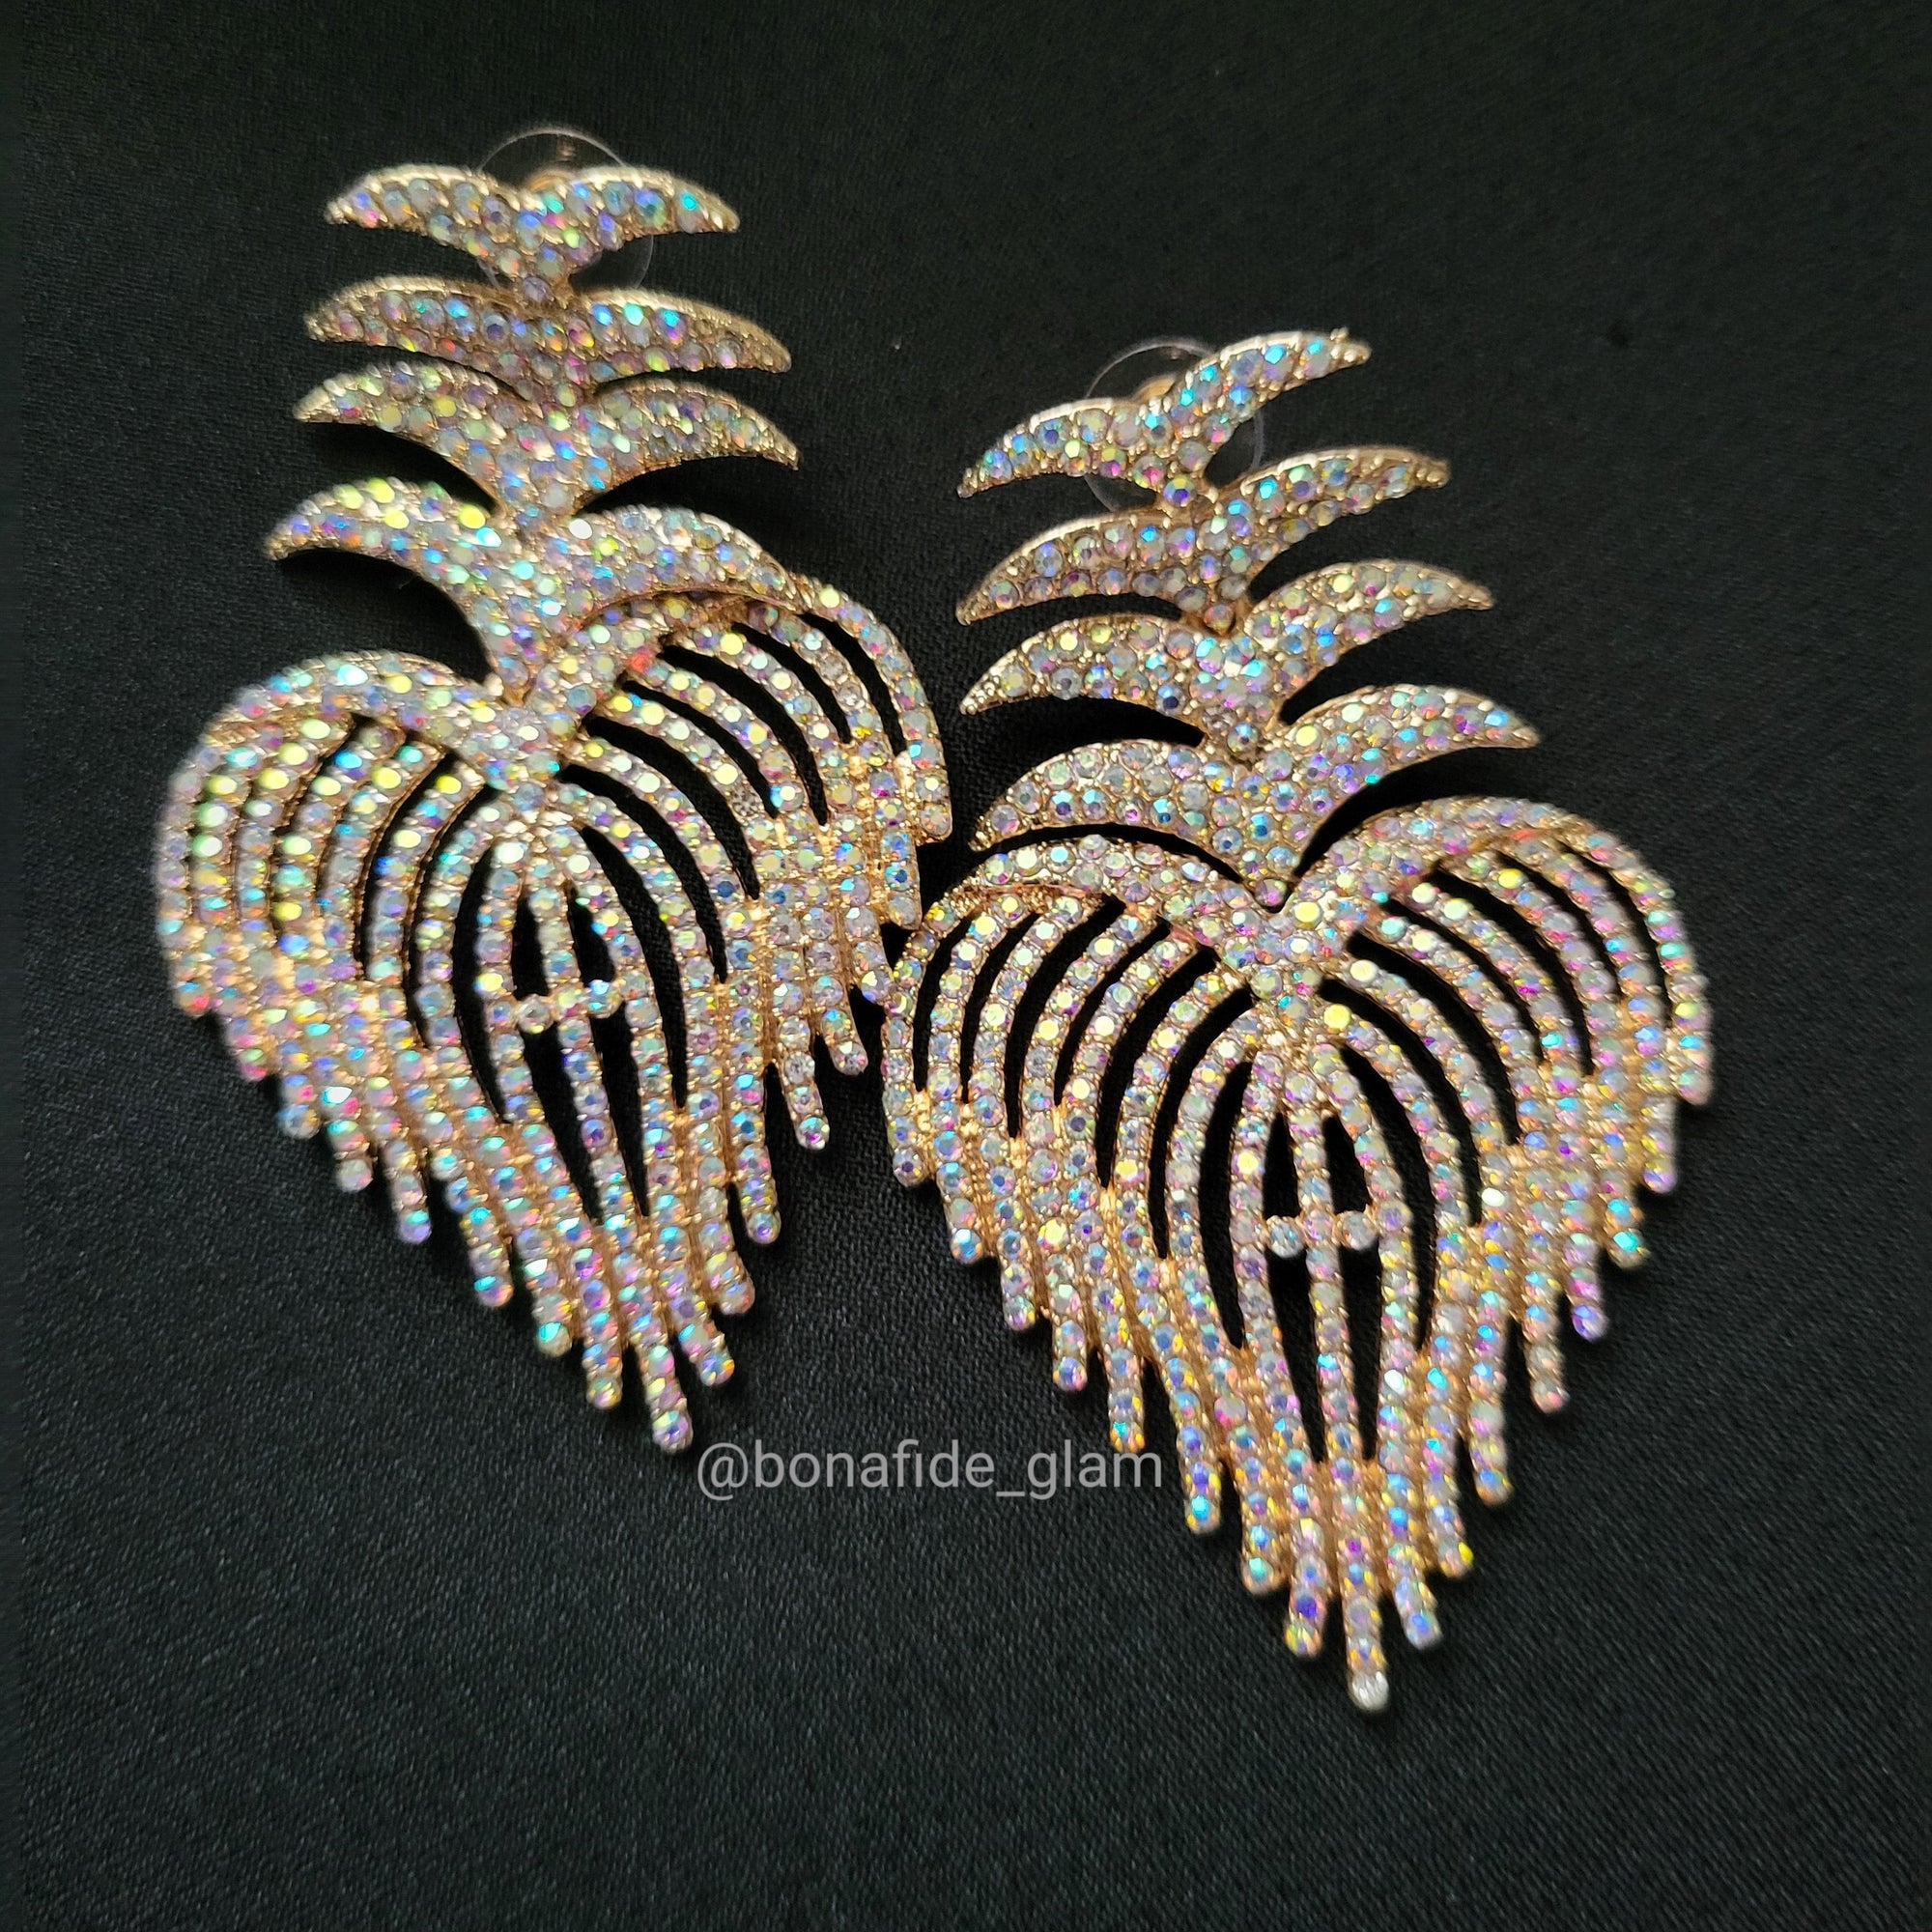 The Palms chandelier Earrings - Bonafide Glam